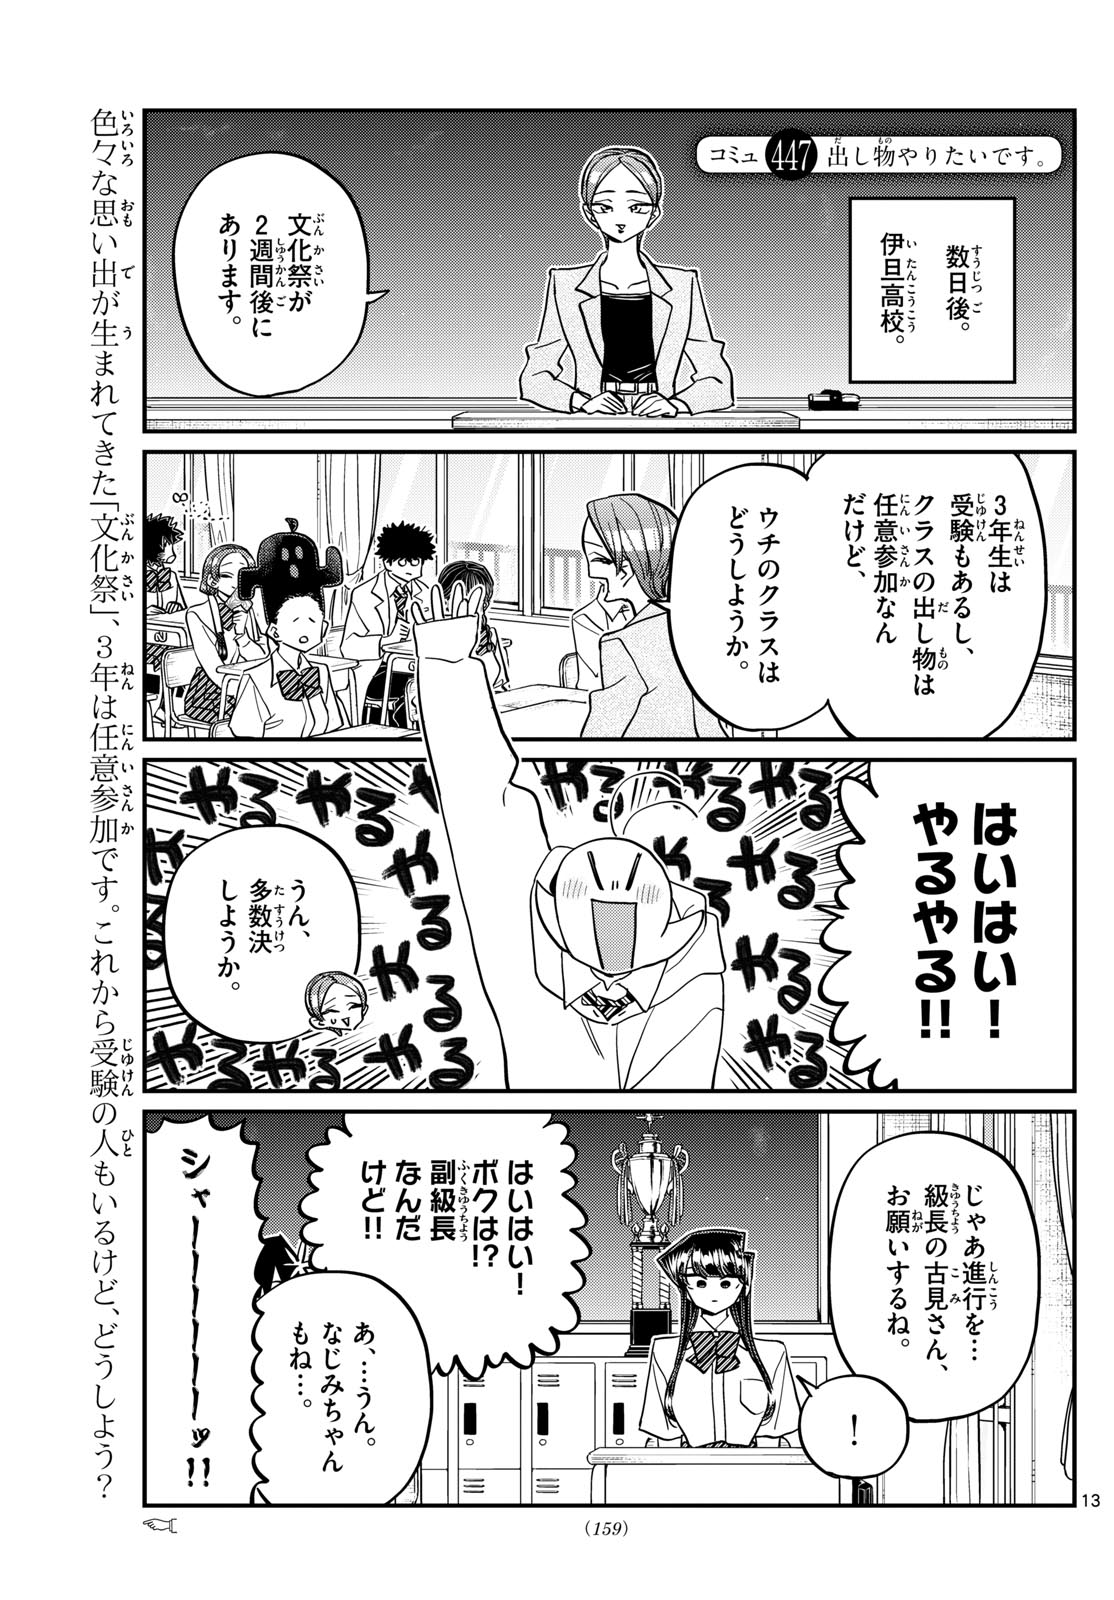 Komi-san wa Komyushou Desu - Chapter 447 - Page 1